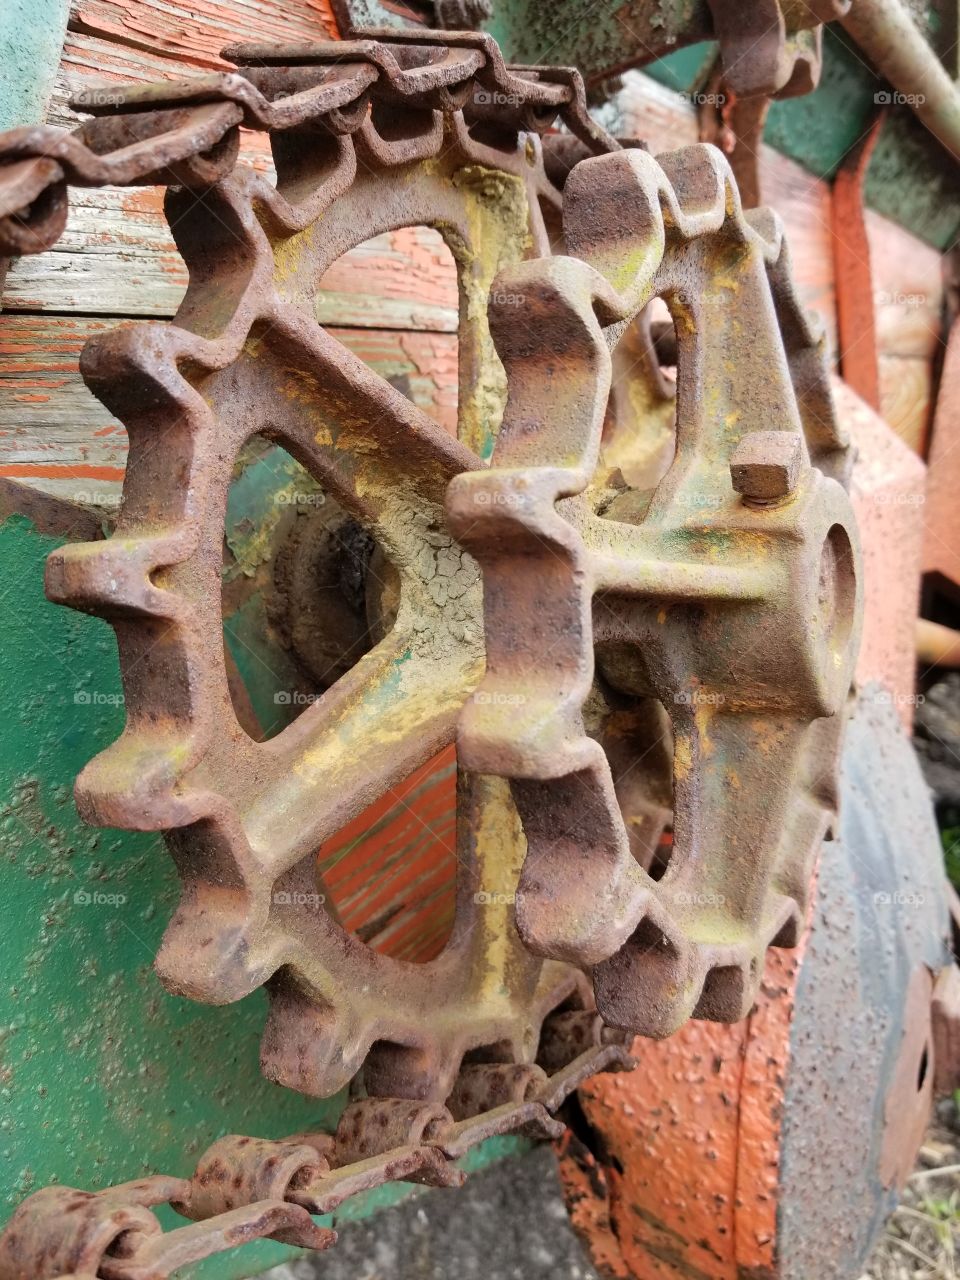 Antique manure spreader gears